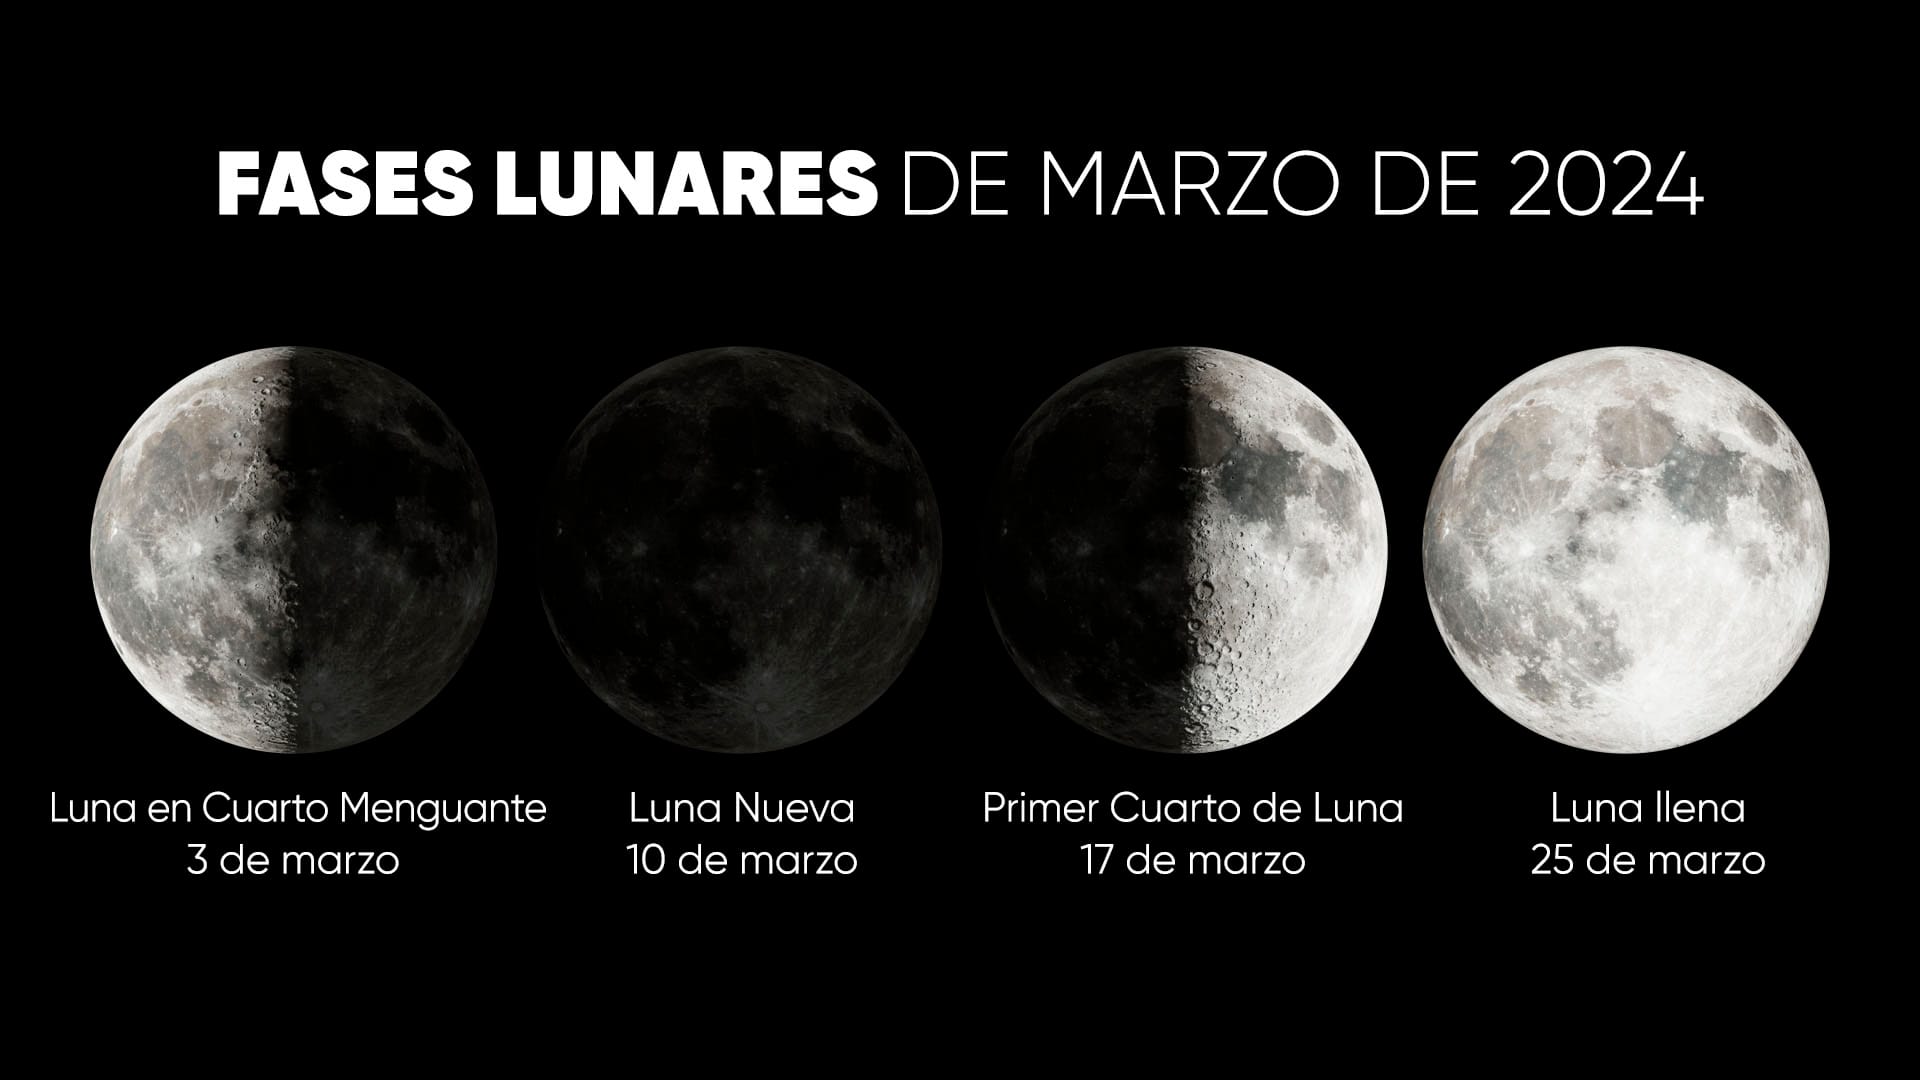 Fases lunares de marzo de 2024